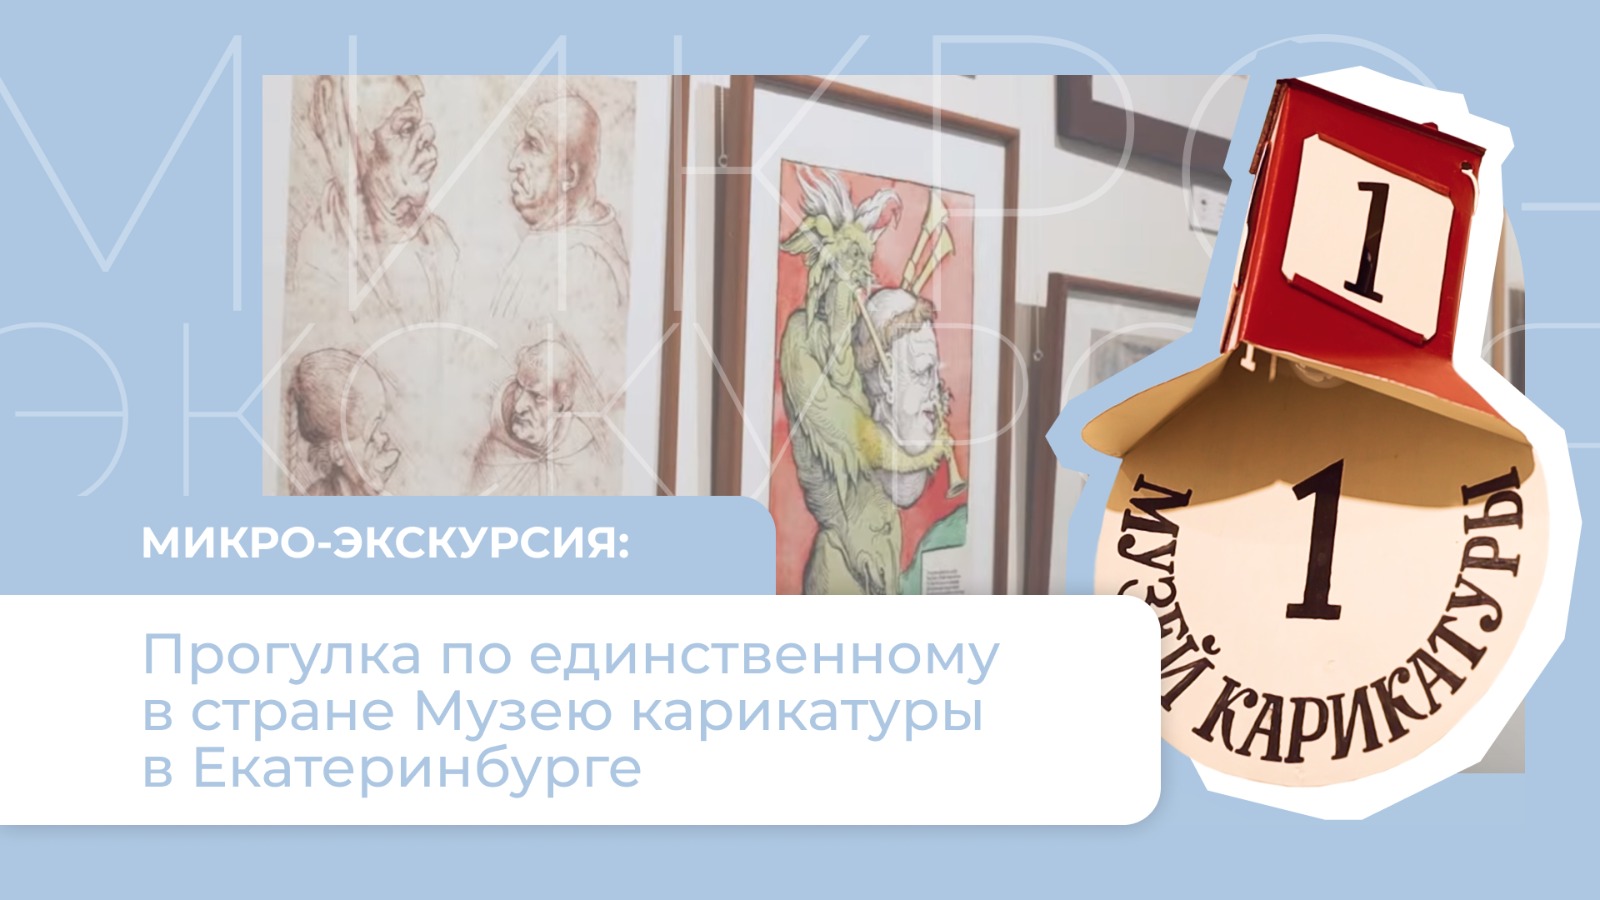 Прогулка по единству в стране Музею карикатуры в Екатеринбурге